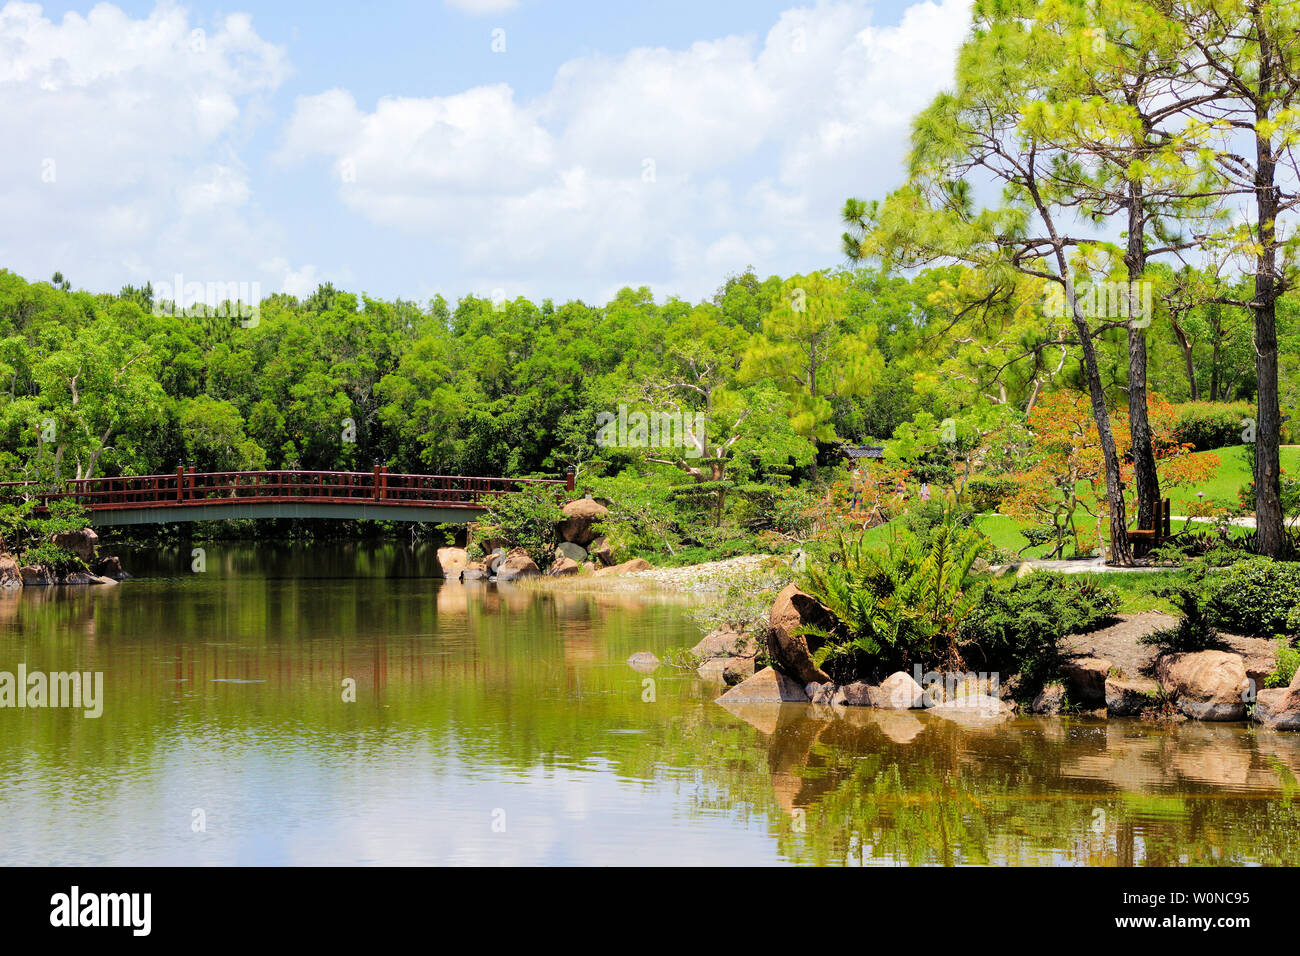 Delray Beach, Floride, jardin botanique japonais Morikami, beau pont, cascade et promenade le long du lac parmi une végétation luxuriante toile Banque D'Images